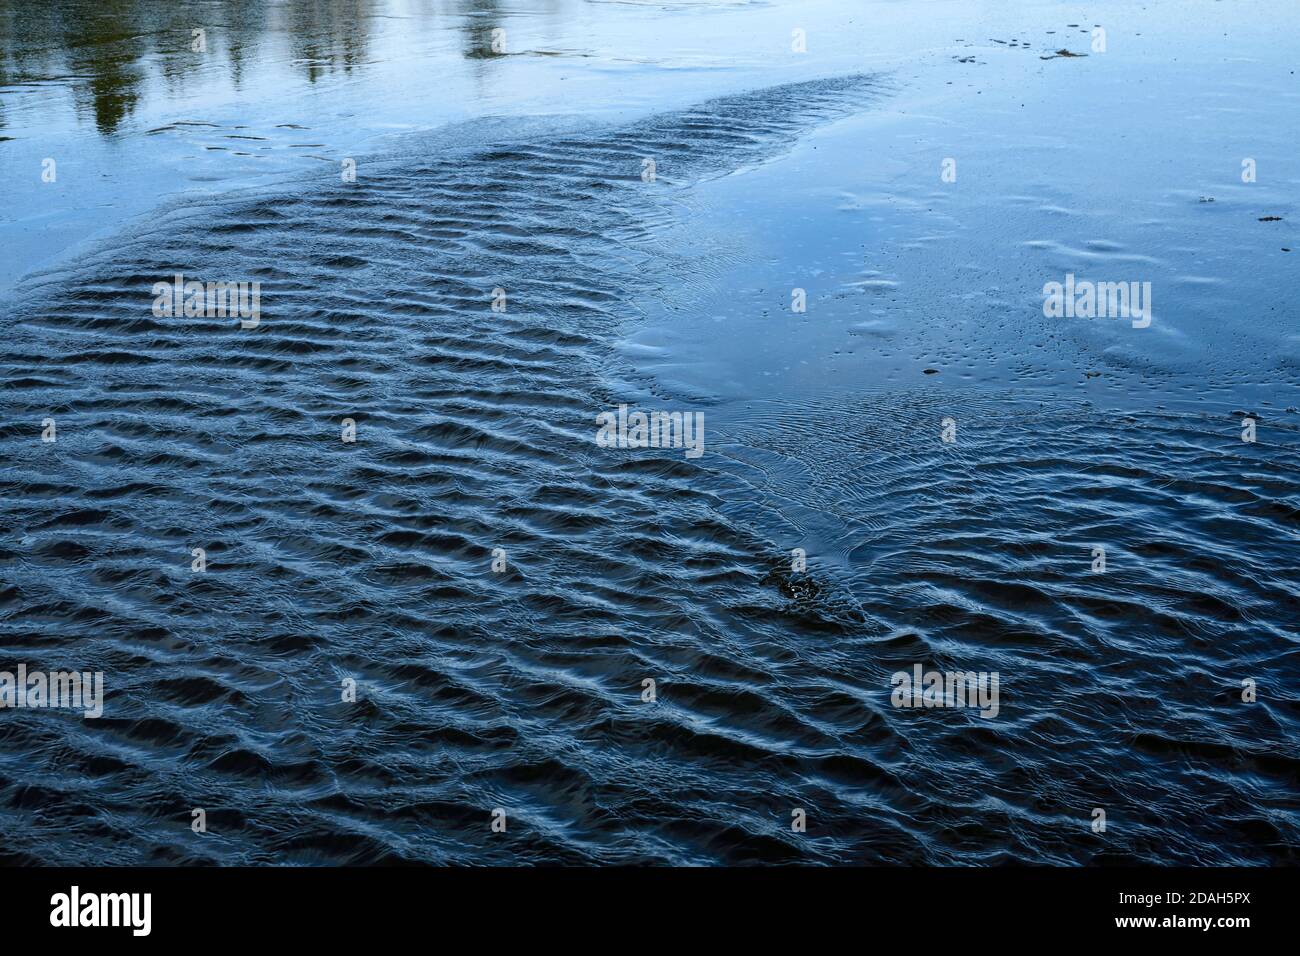 Wellen auf dem See Wasser, das nicht gefroren ist auf Maxwell Lake in Hinton Alberta Kanada. Stockfoto